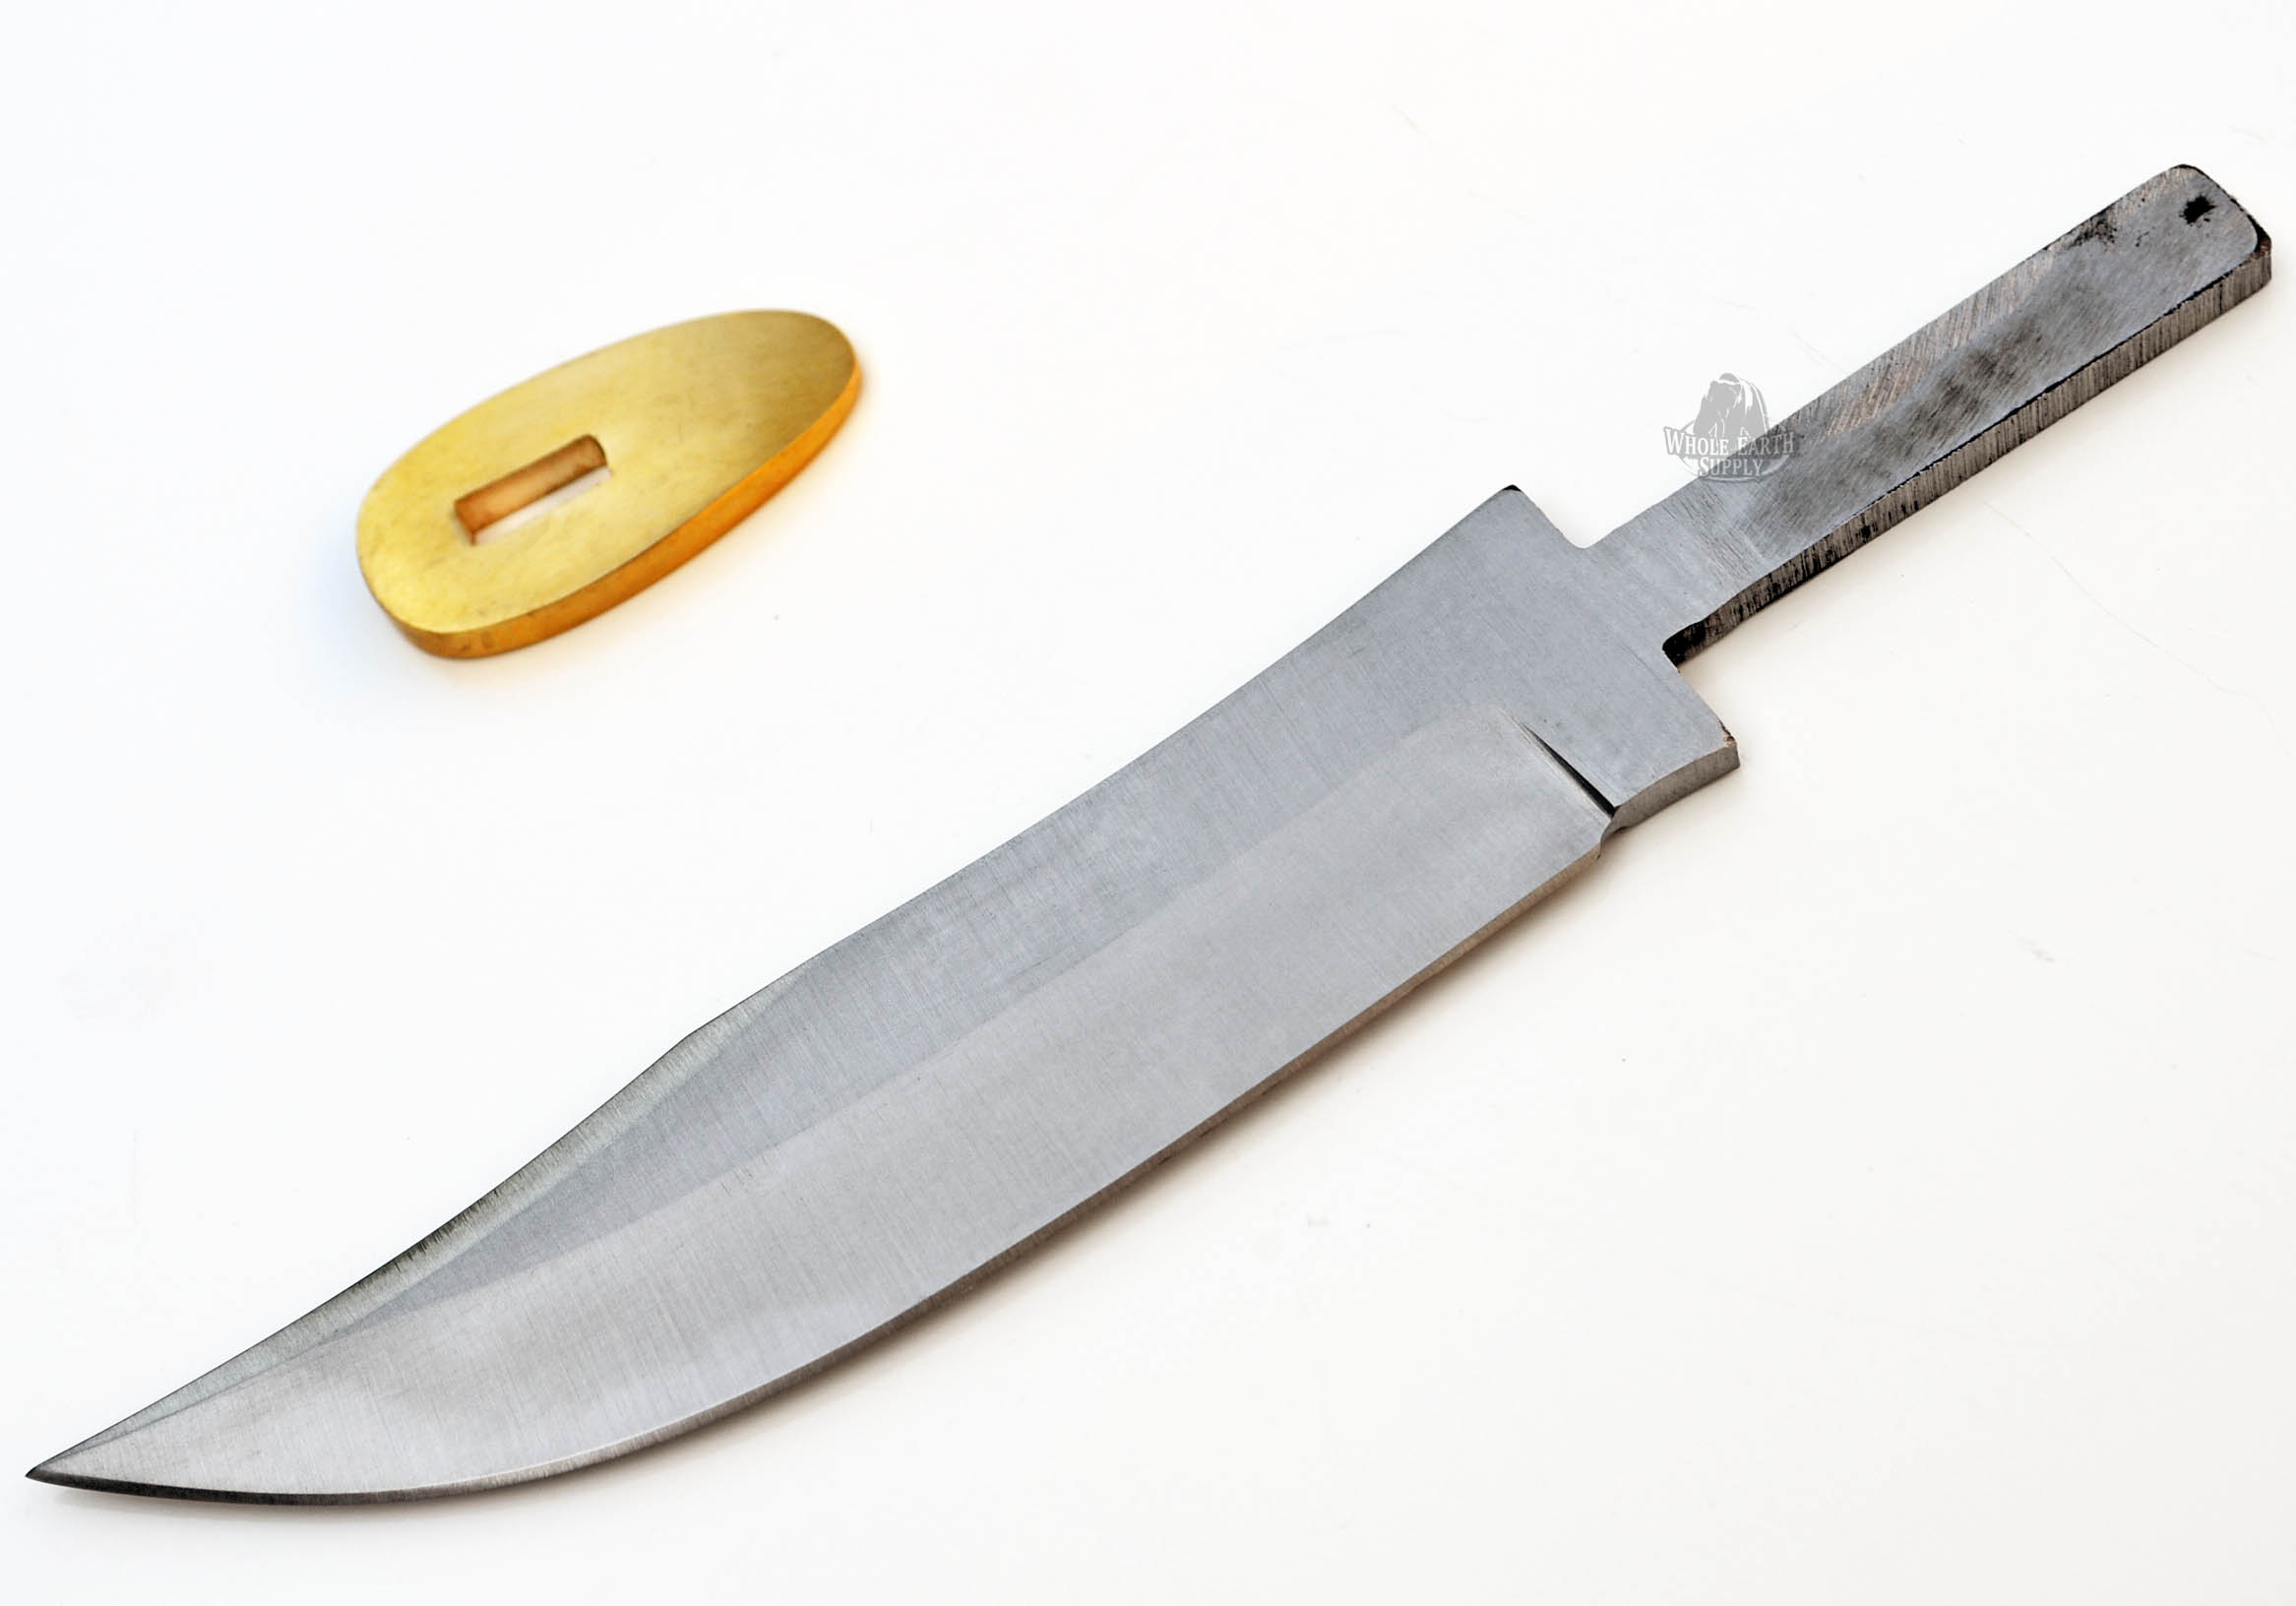 4inch Skinner Skinning Blade Blank Knife Making Knives Stainless Steel +Guard